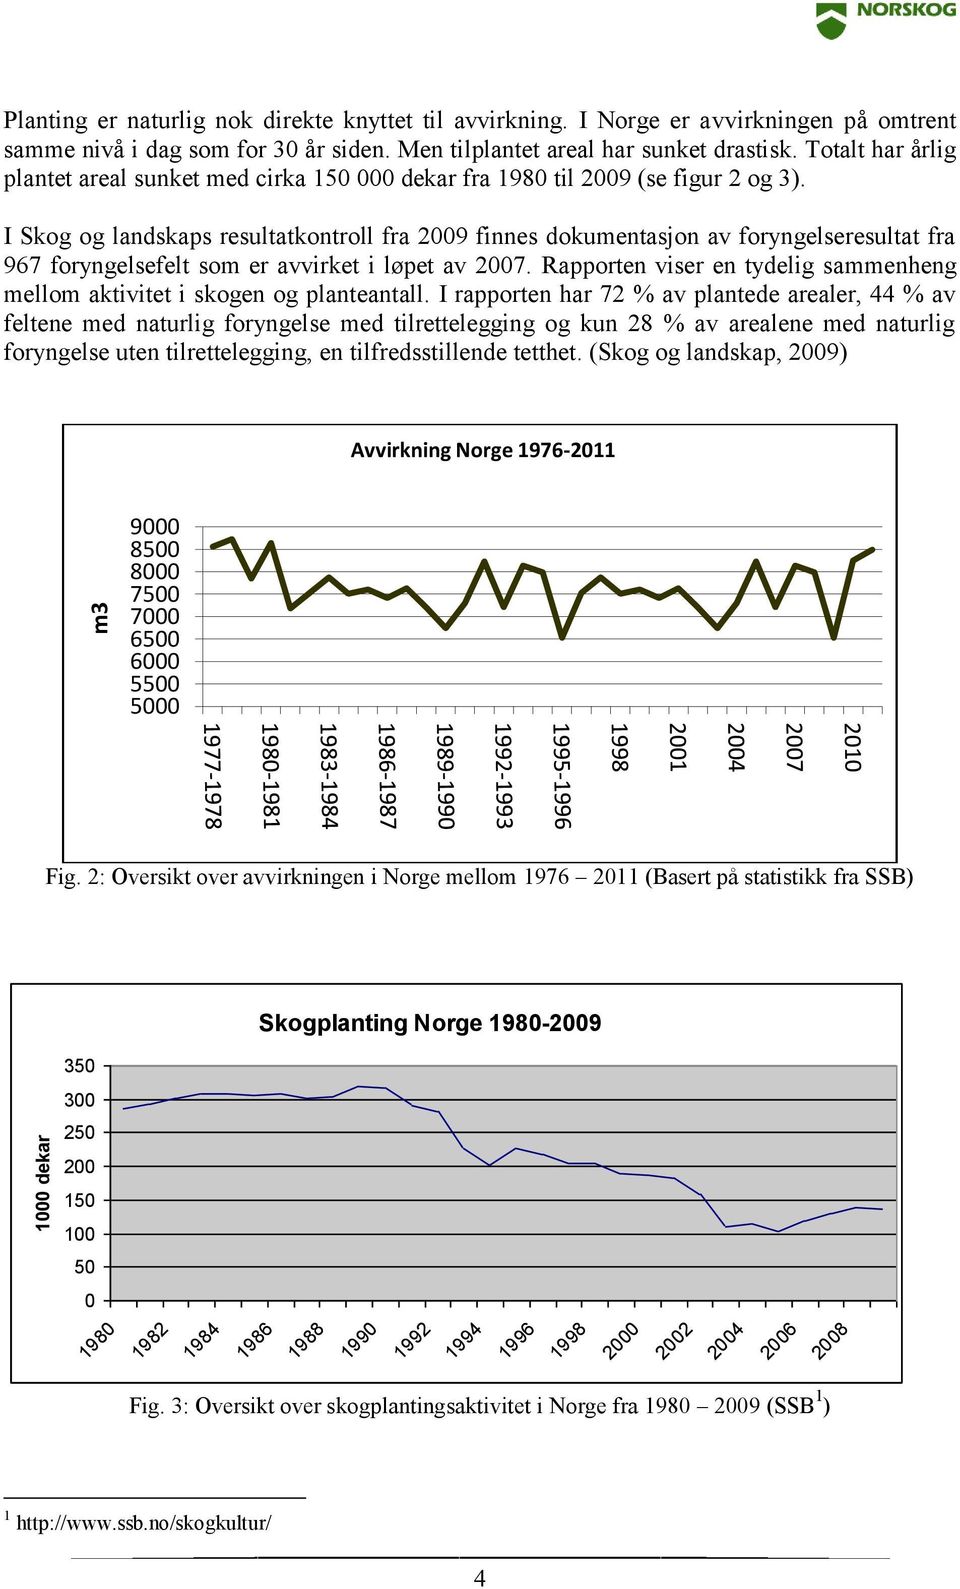 I Skog og landskaps resultatkontroll fra 2009 finnes dokumentasjon av foryngelseresultat fra 967 foryngelsefelt som er avvirket i løpet av 2007.